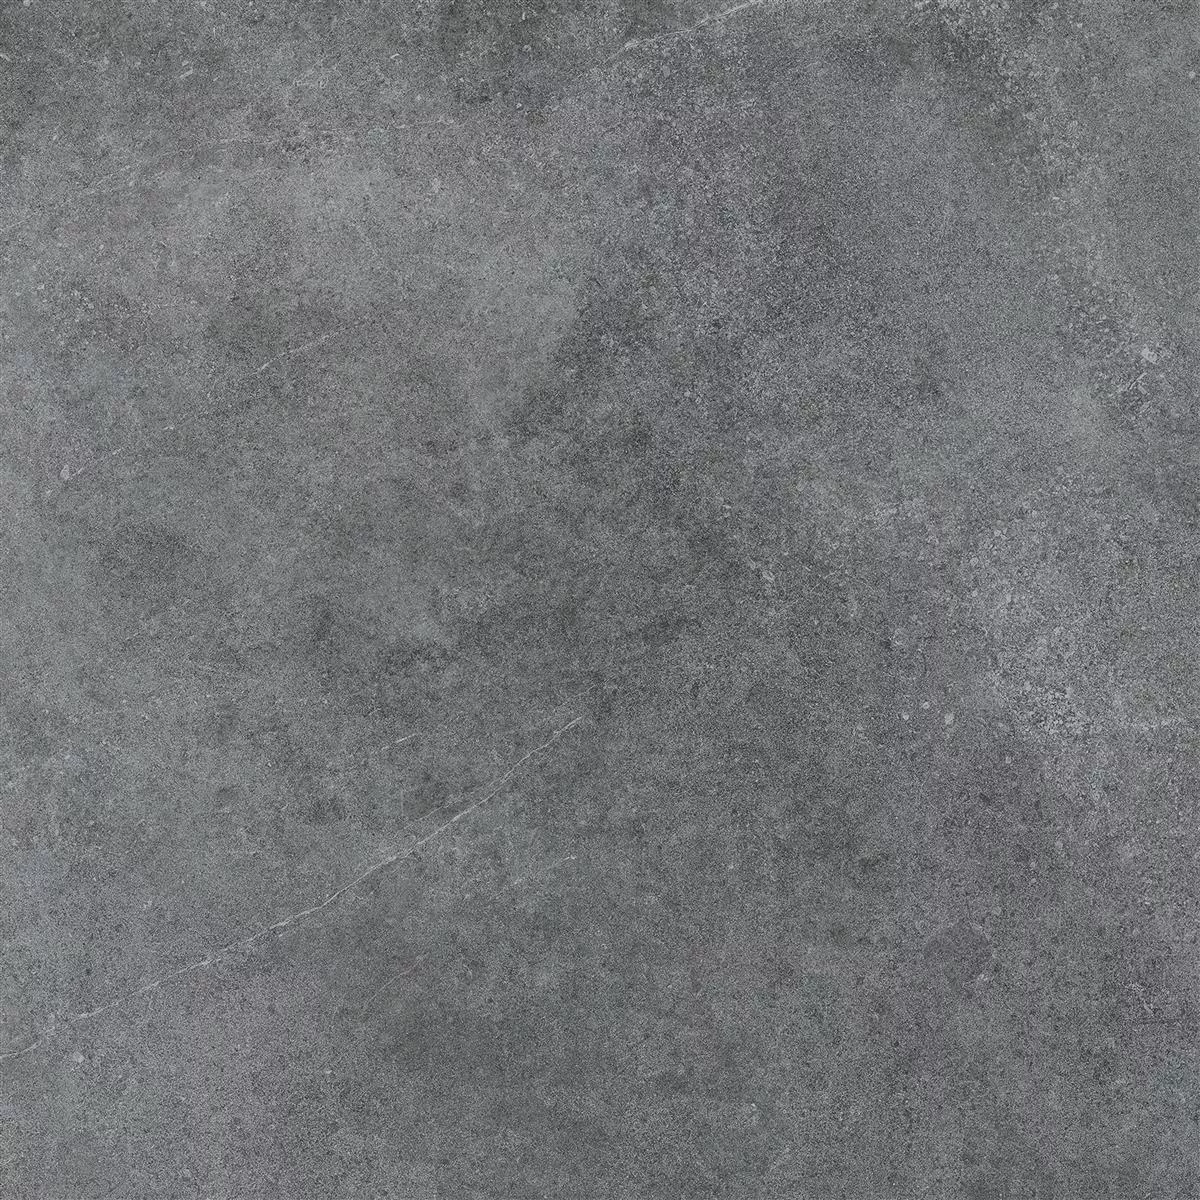 Πρότυπο Πλακάκια Δαπέδου Montana Άγυαλο Ανθρακίτης 60x60cm / R10B